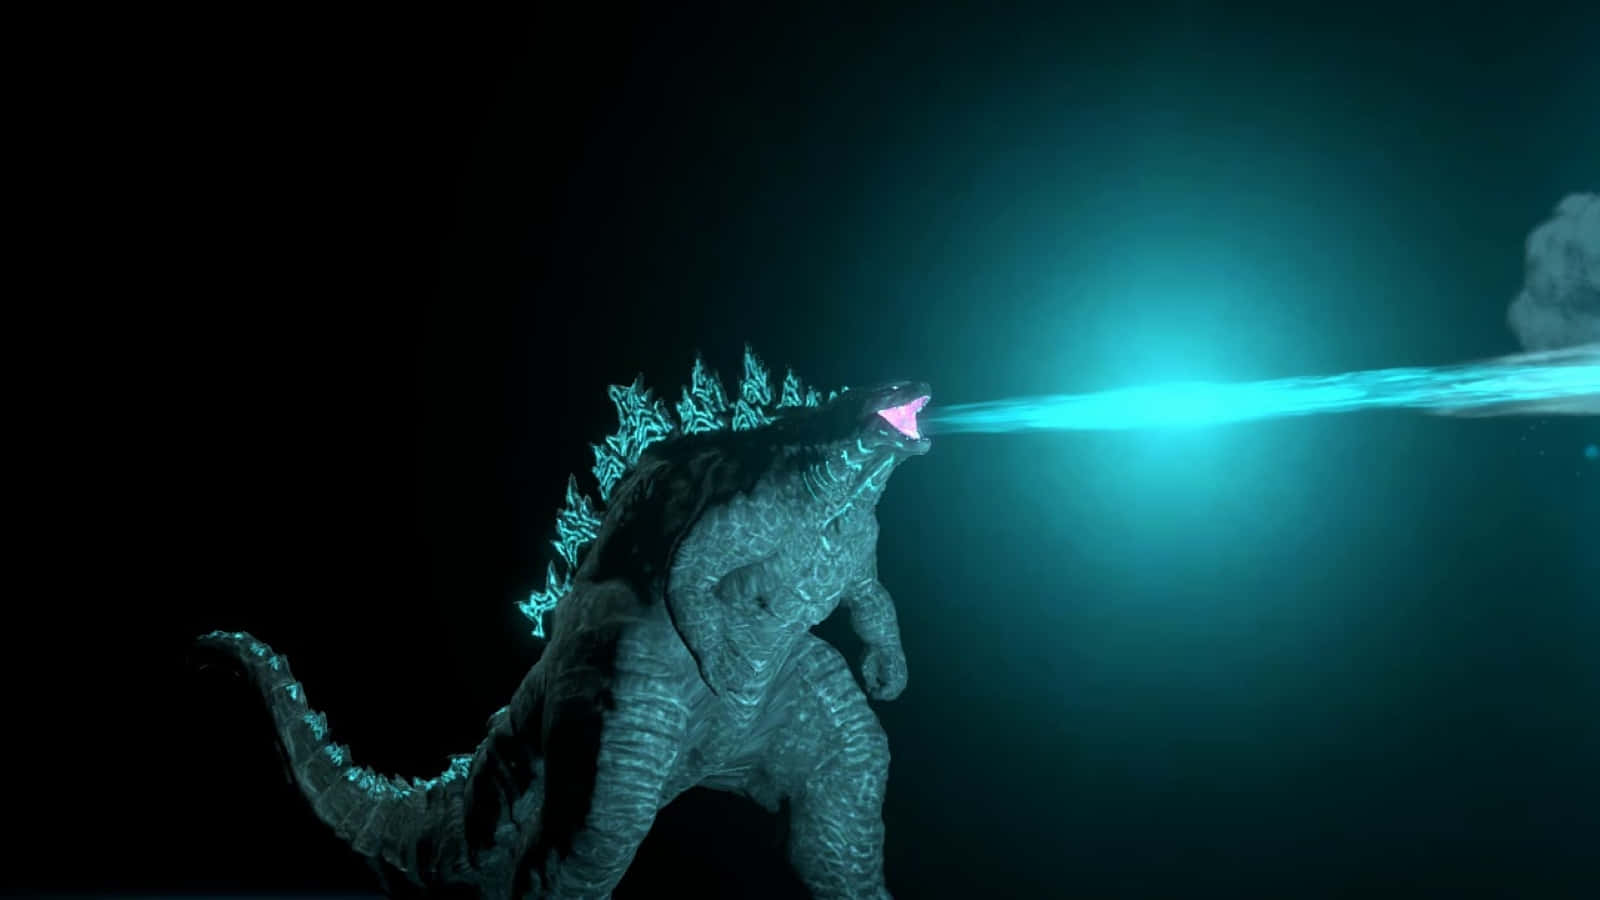 Godzilla Unleashing Its Powerful Atomic Breath Wallpaper